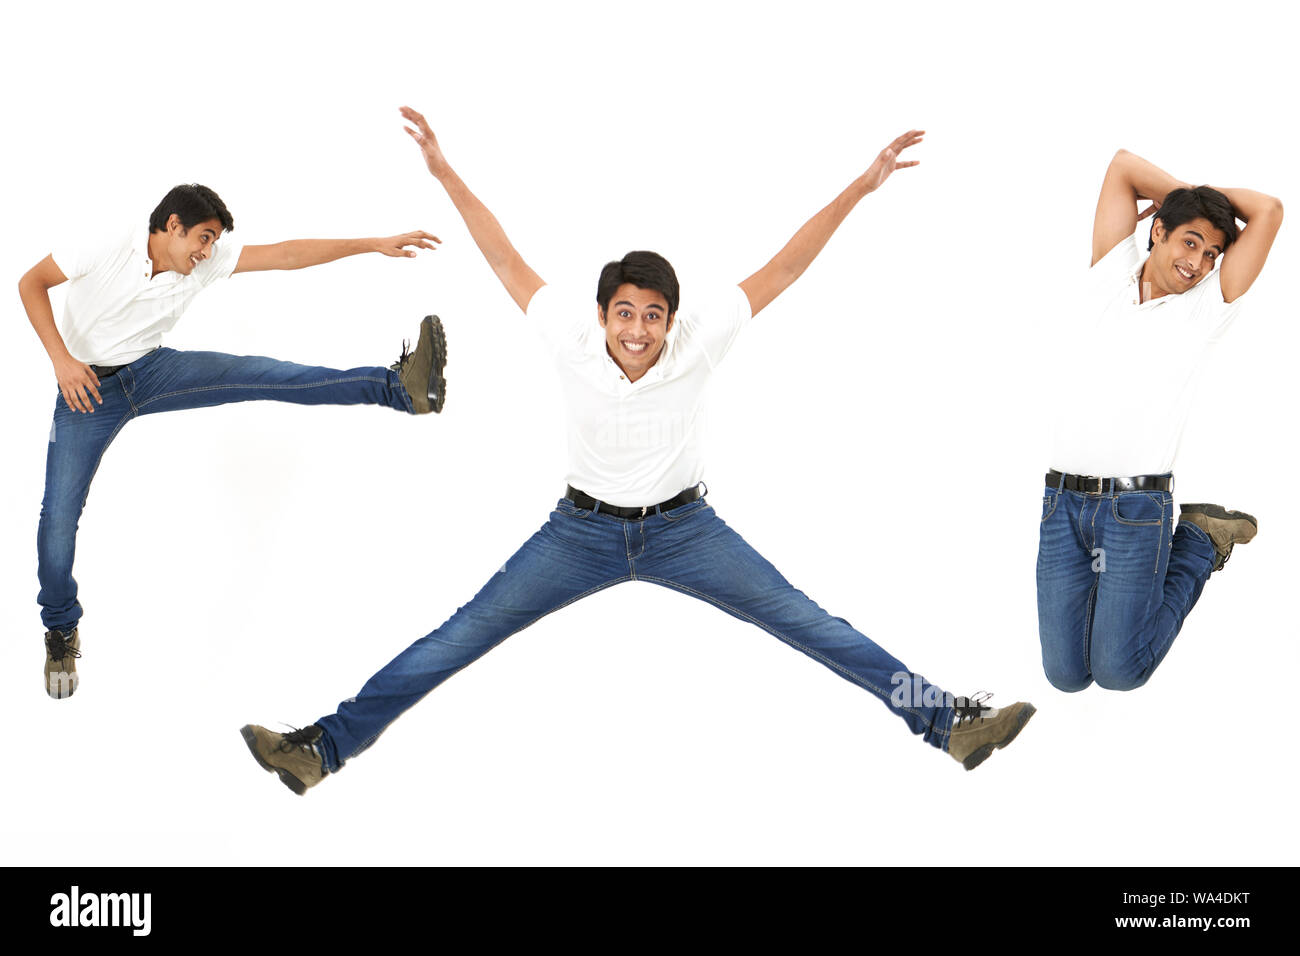 Mehrere Bilder eines jungen Mannes, der in der Luft springt und lächelt Stockfoto